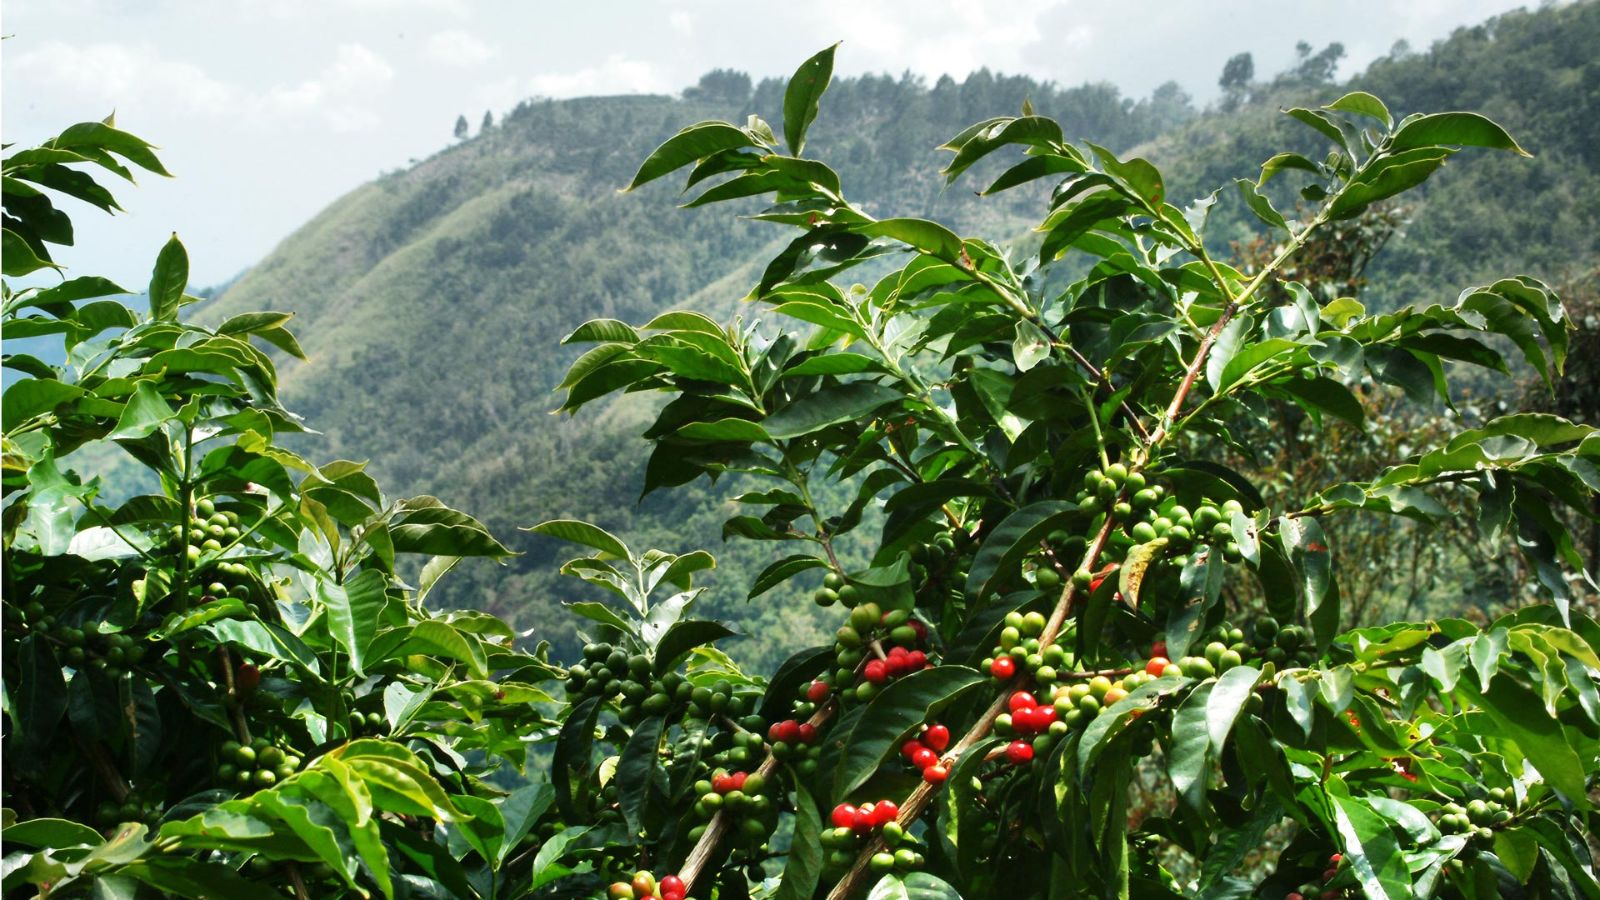 hình ảnh cây cà phê tại vùng núi cao blue mountain